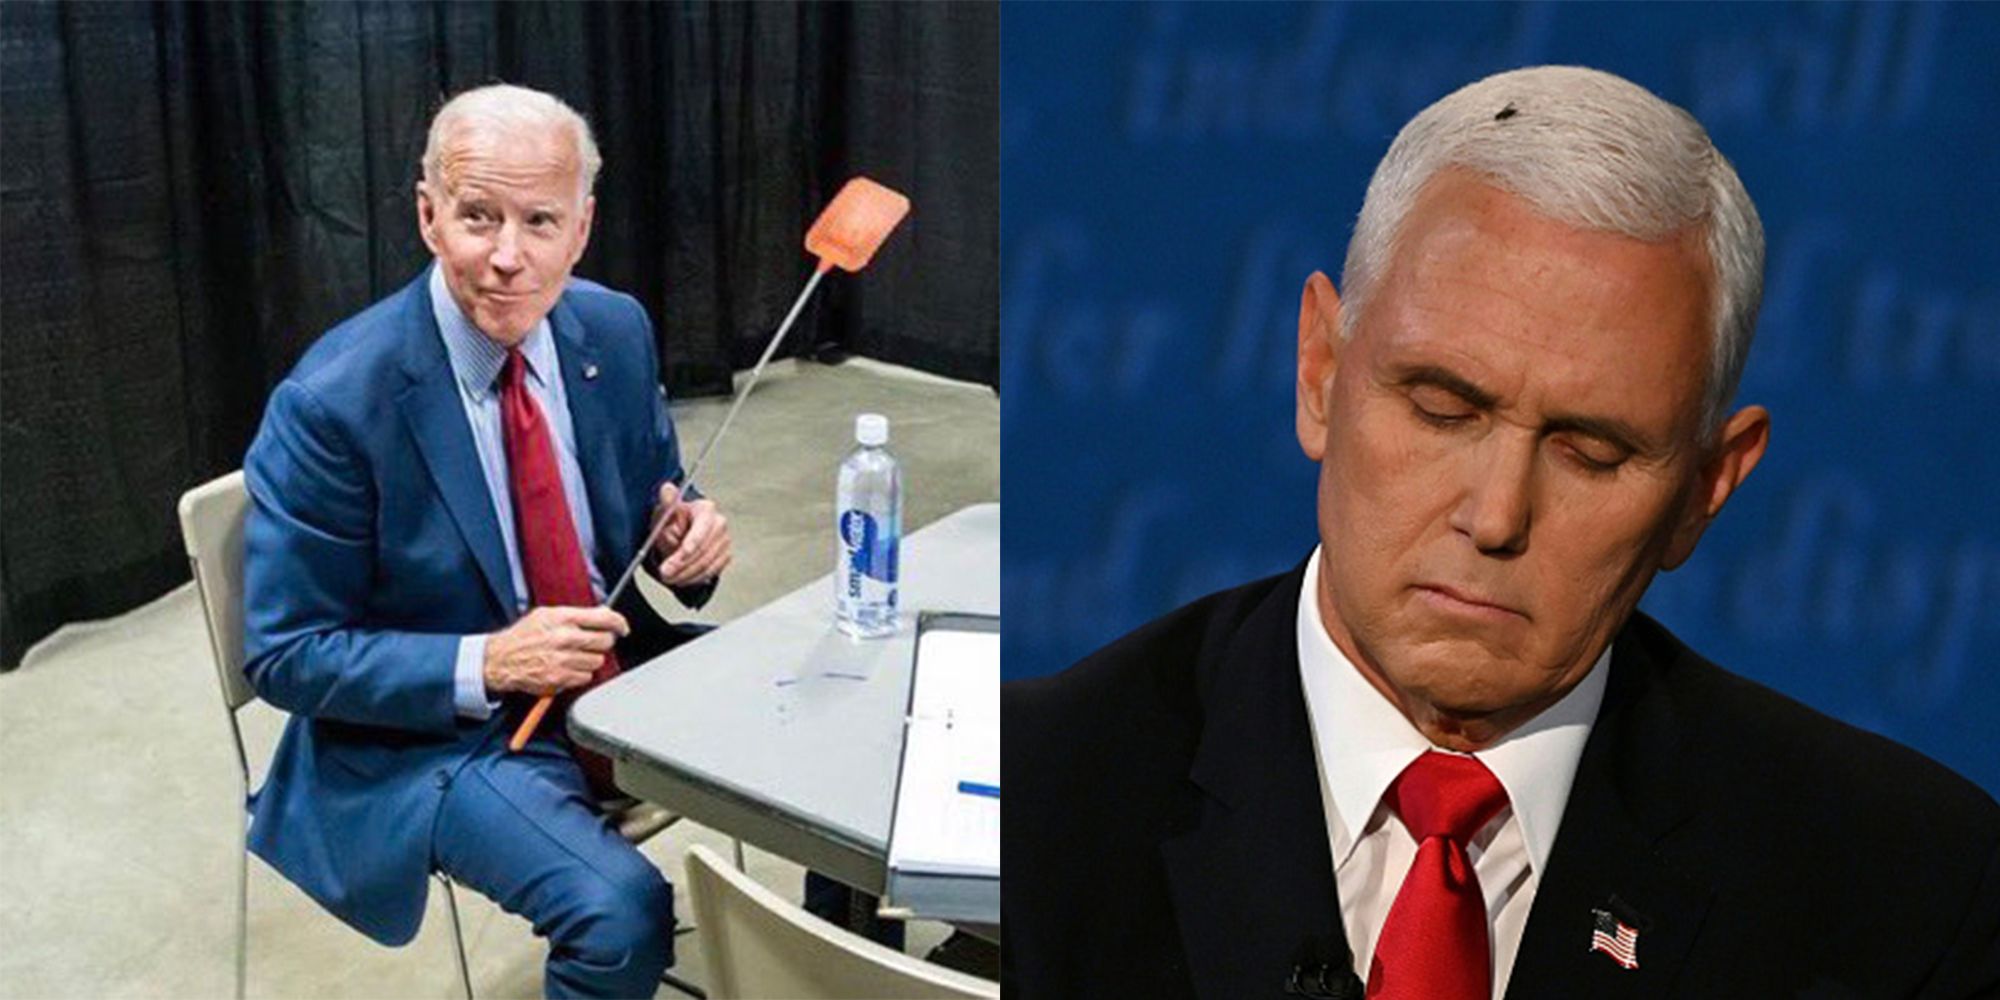 Harris Pence Fly Swatter 2020 Presidential Debate Joe Biden Truth Over Flies